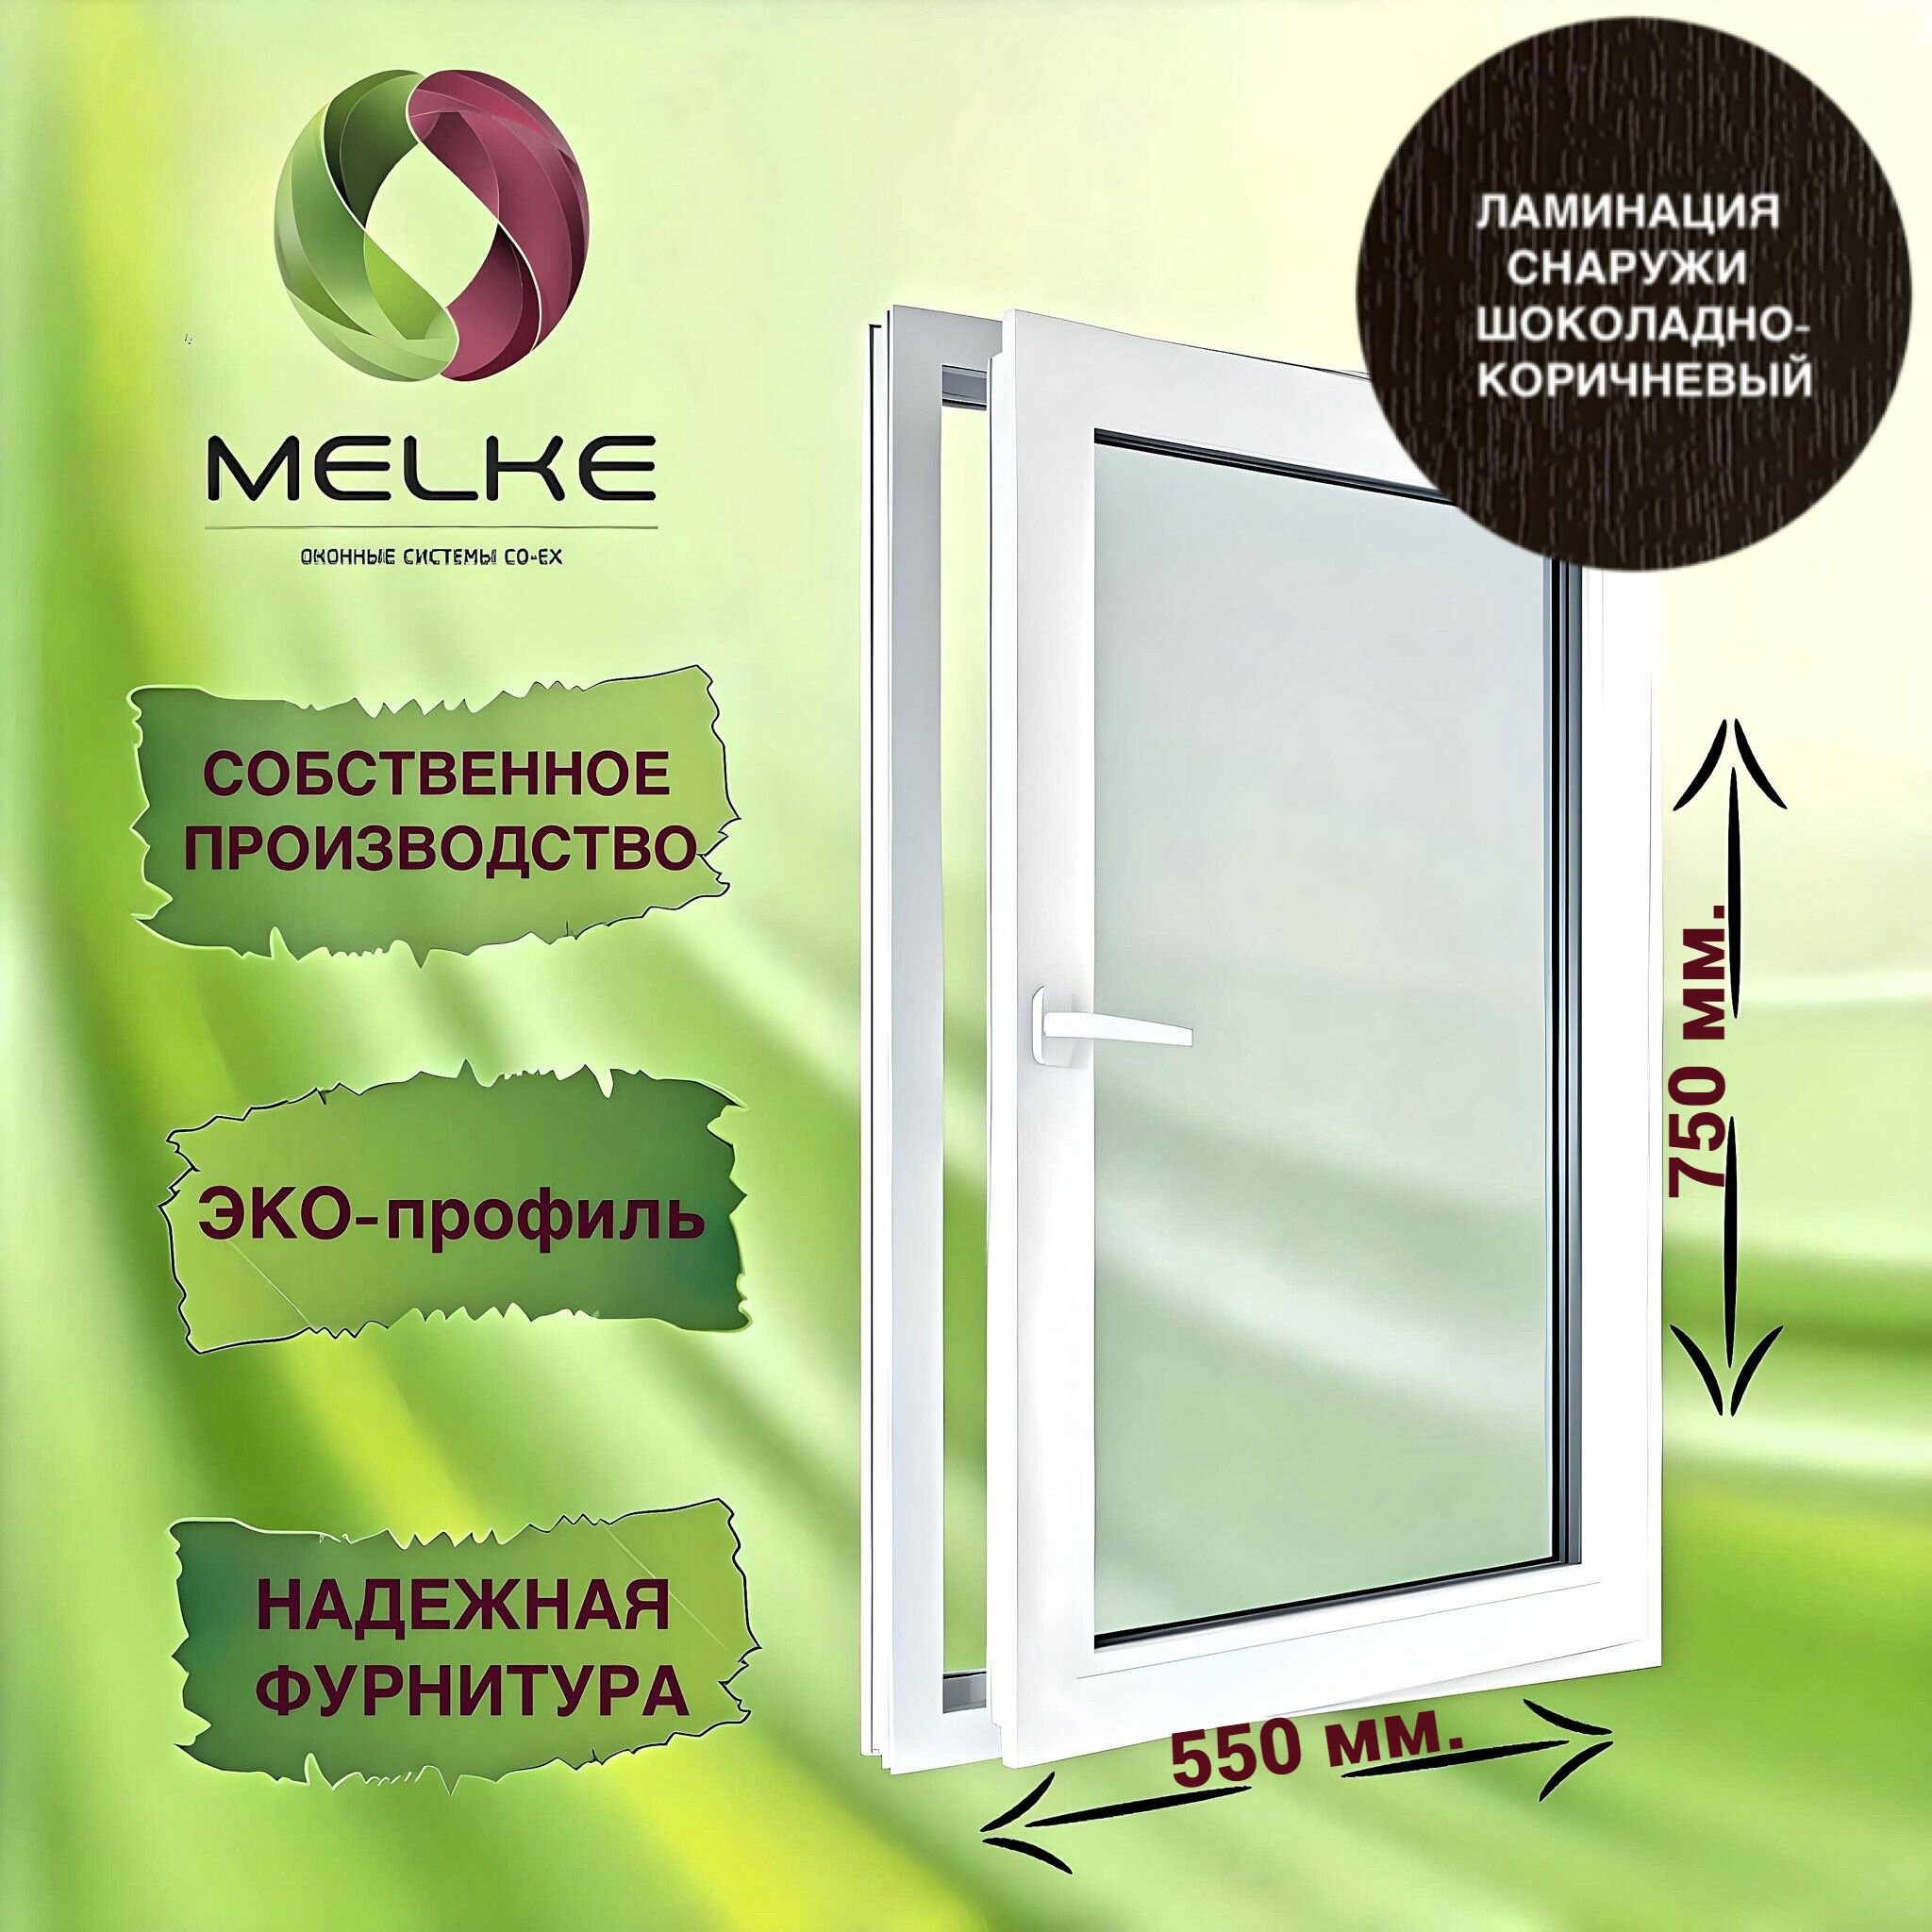 Окно 750 х 550 мм, Melke 60 (Фурнитура FUTURUSS), правое одностворчатое, поворотно-откидное, цвет внешней ламинации Шоколадно-коричневый, 2-х камерный стеклопакет, 3 стекла